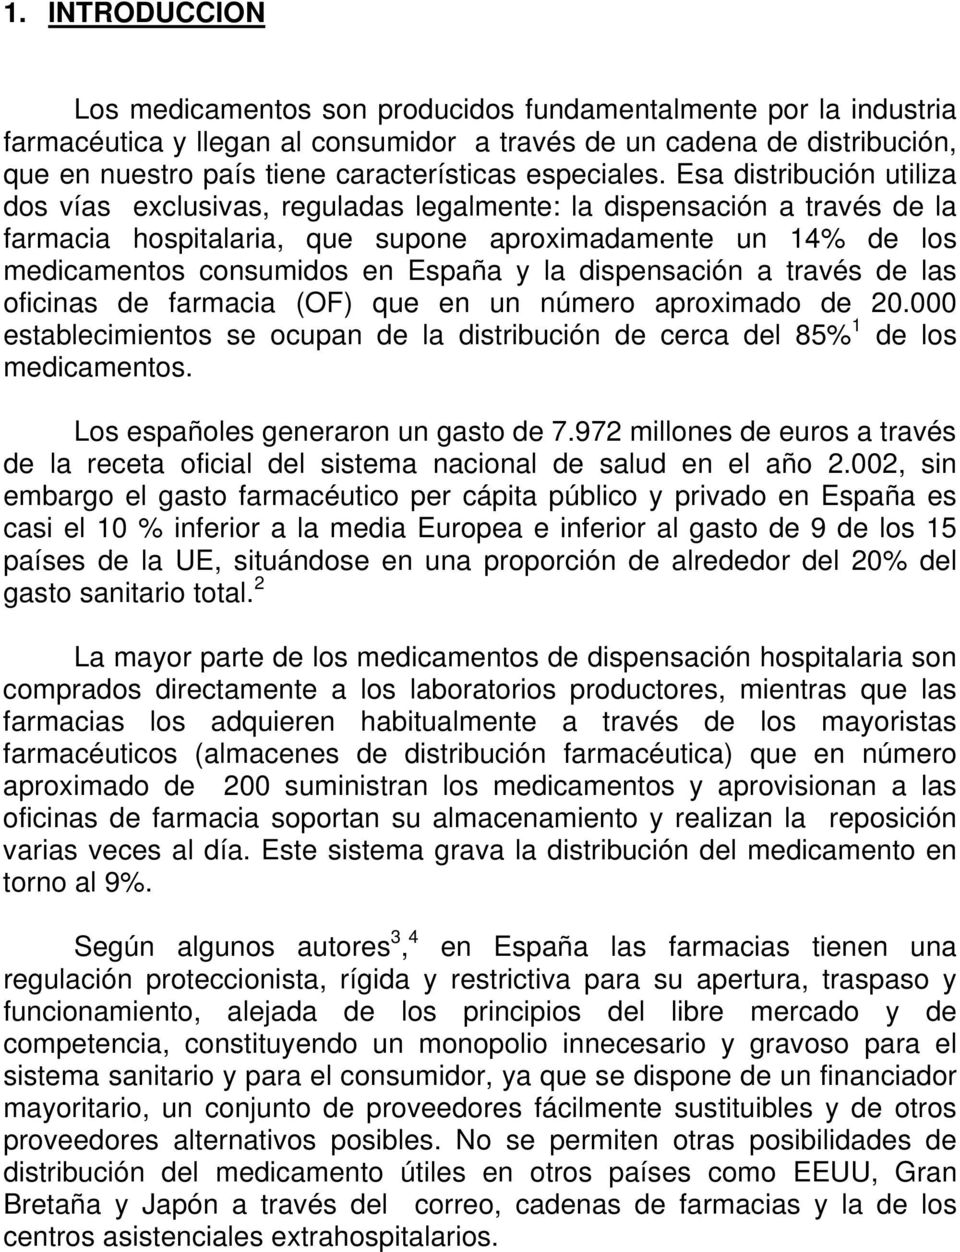 Esa distribución utiliza dos vías exclusivas, reguladas legalmente: la dispensación a través de la farmacia hospitalaria, que supone aproximadamente un 14% de los medicamentos consumidos en España y